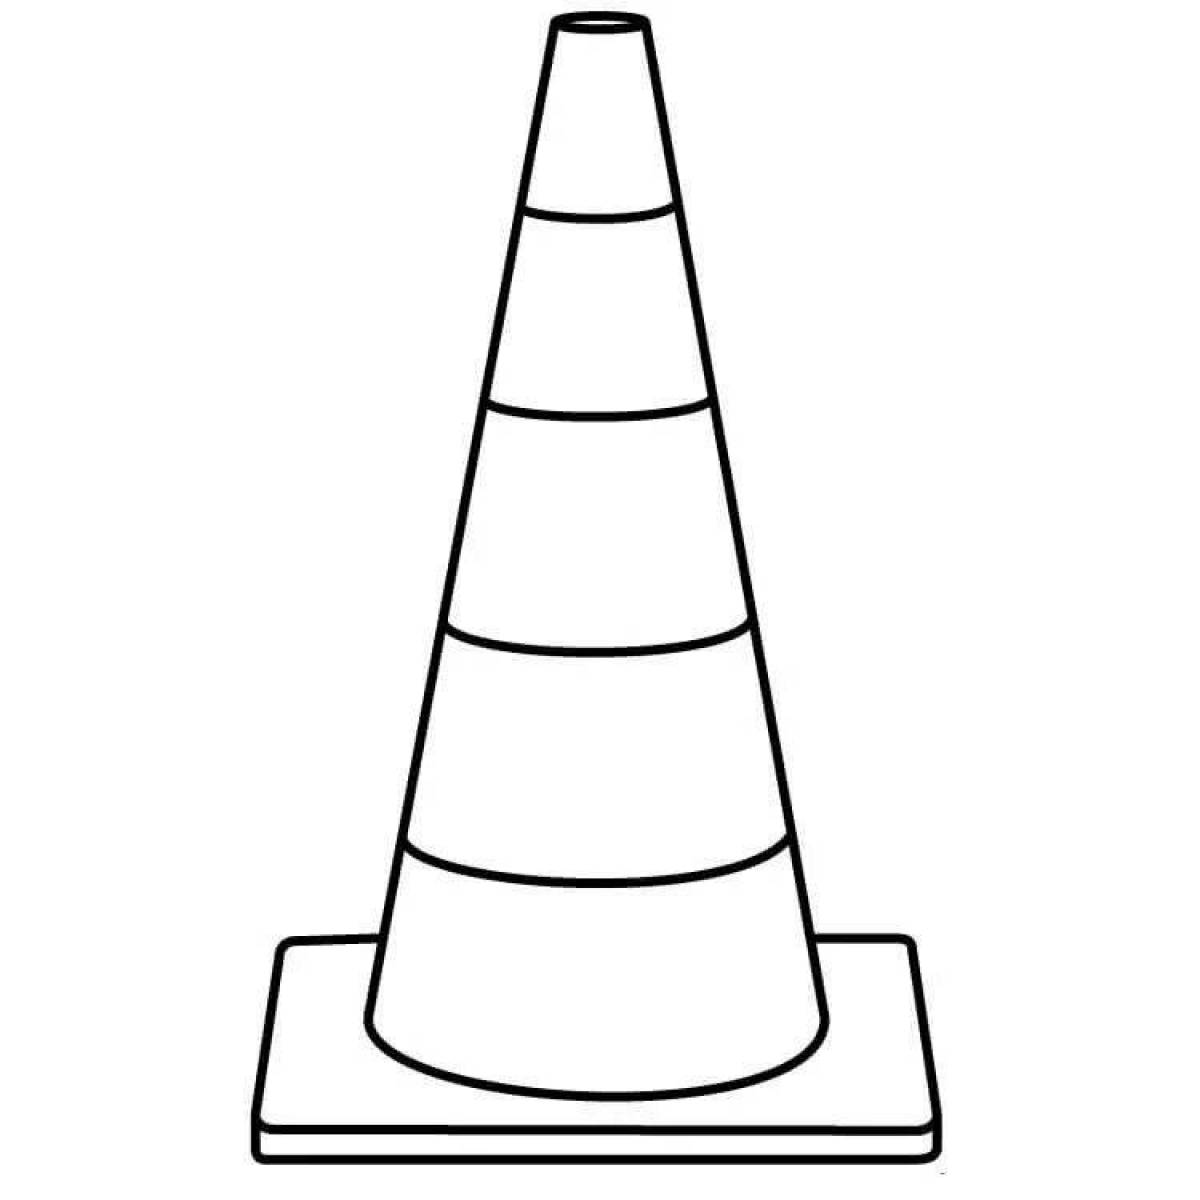 Traffic cones #10